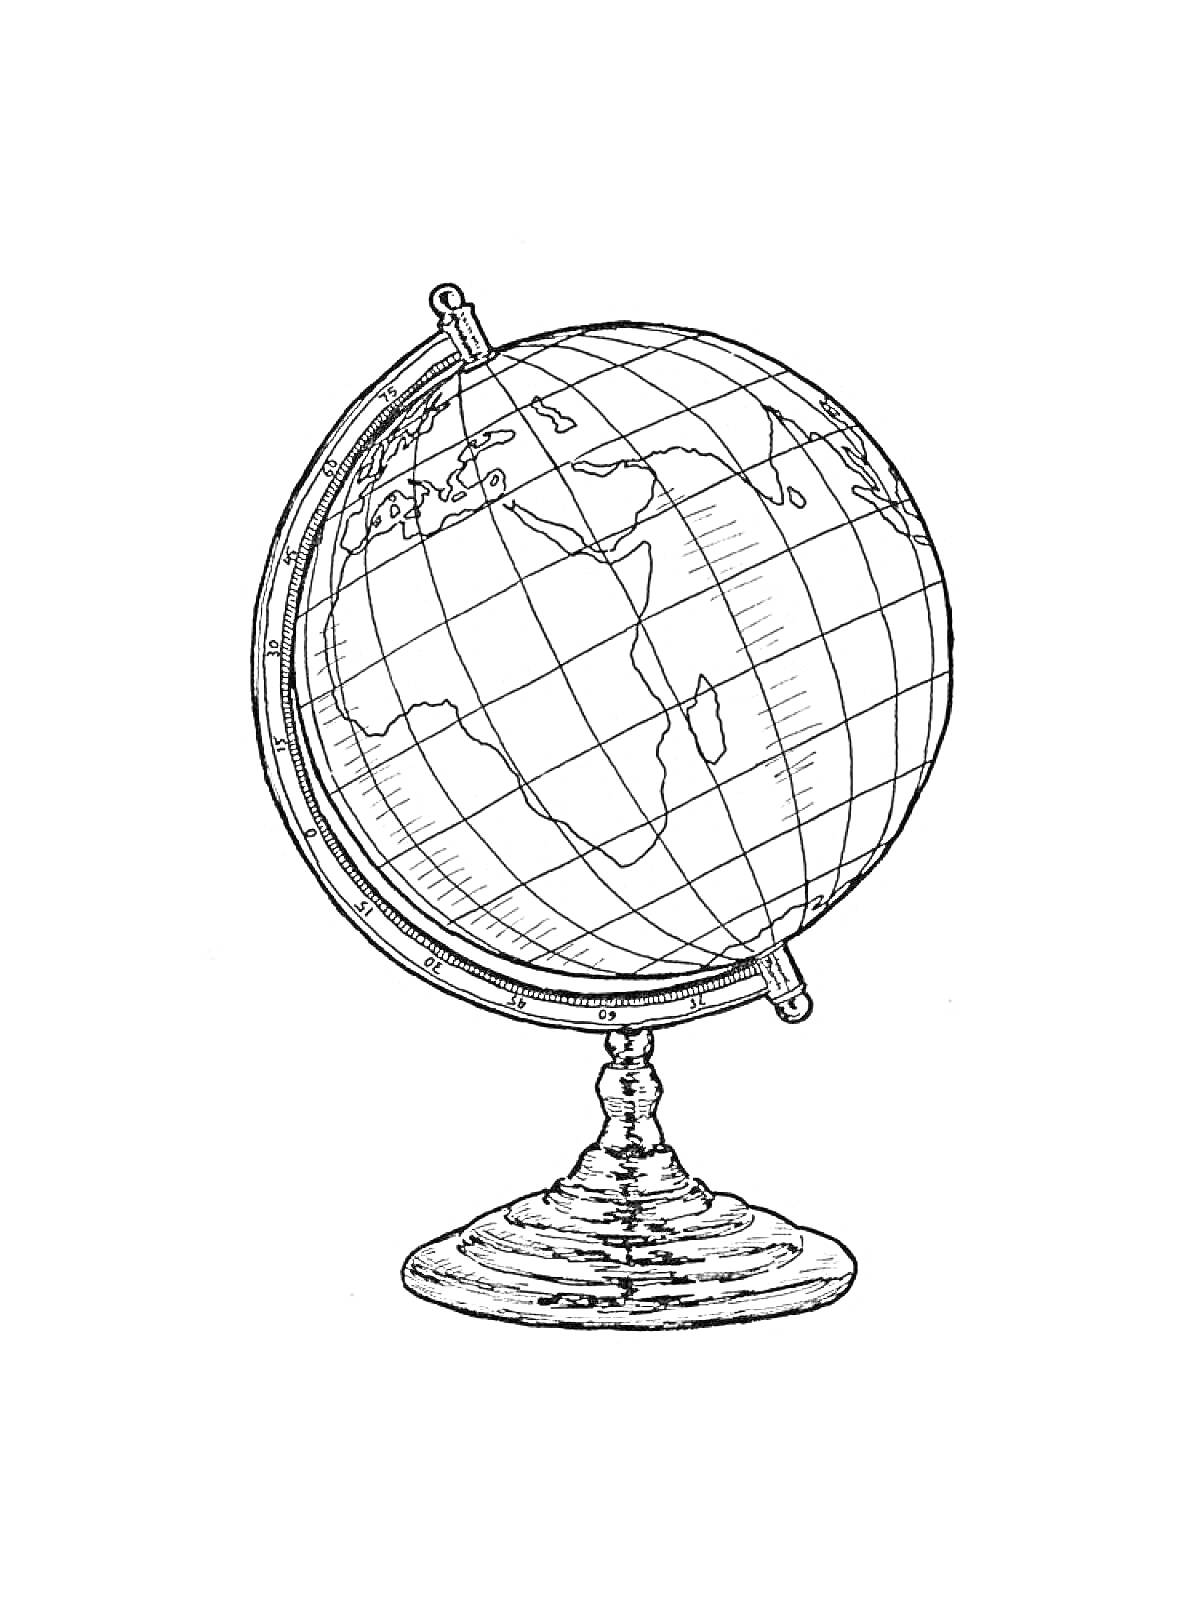 Раскраска Глобус с подставкой и меридианом, с рисованными контурами материков и параллелями